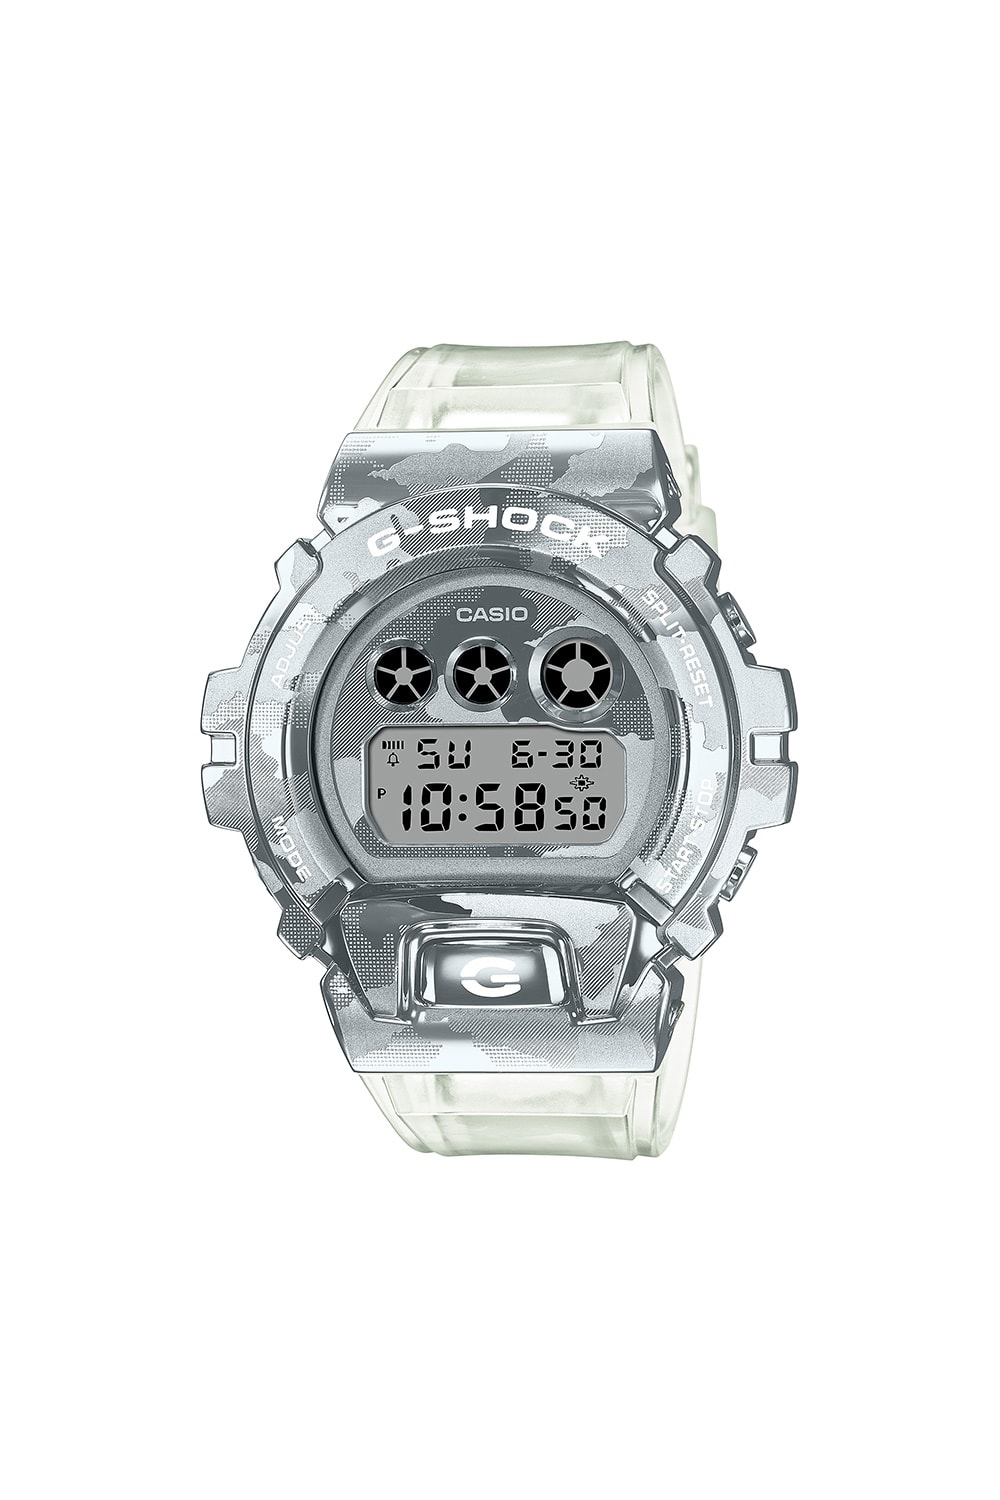 G-Shock 推出全新金屬錶殼系列錶款